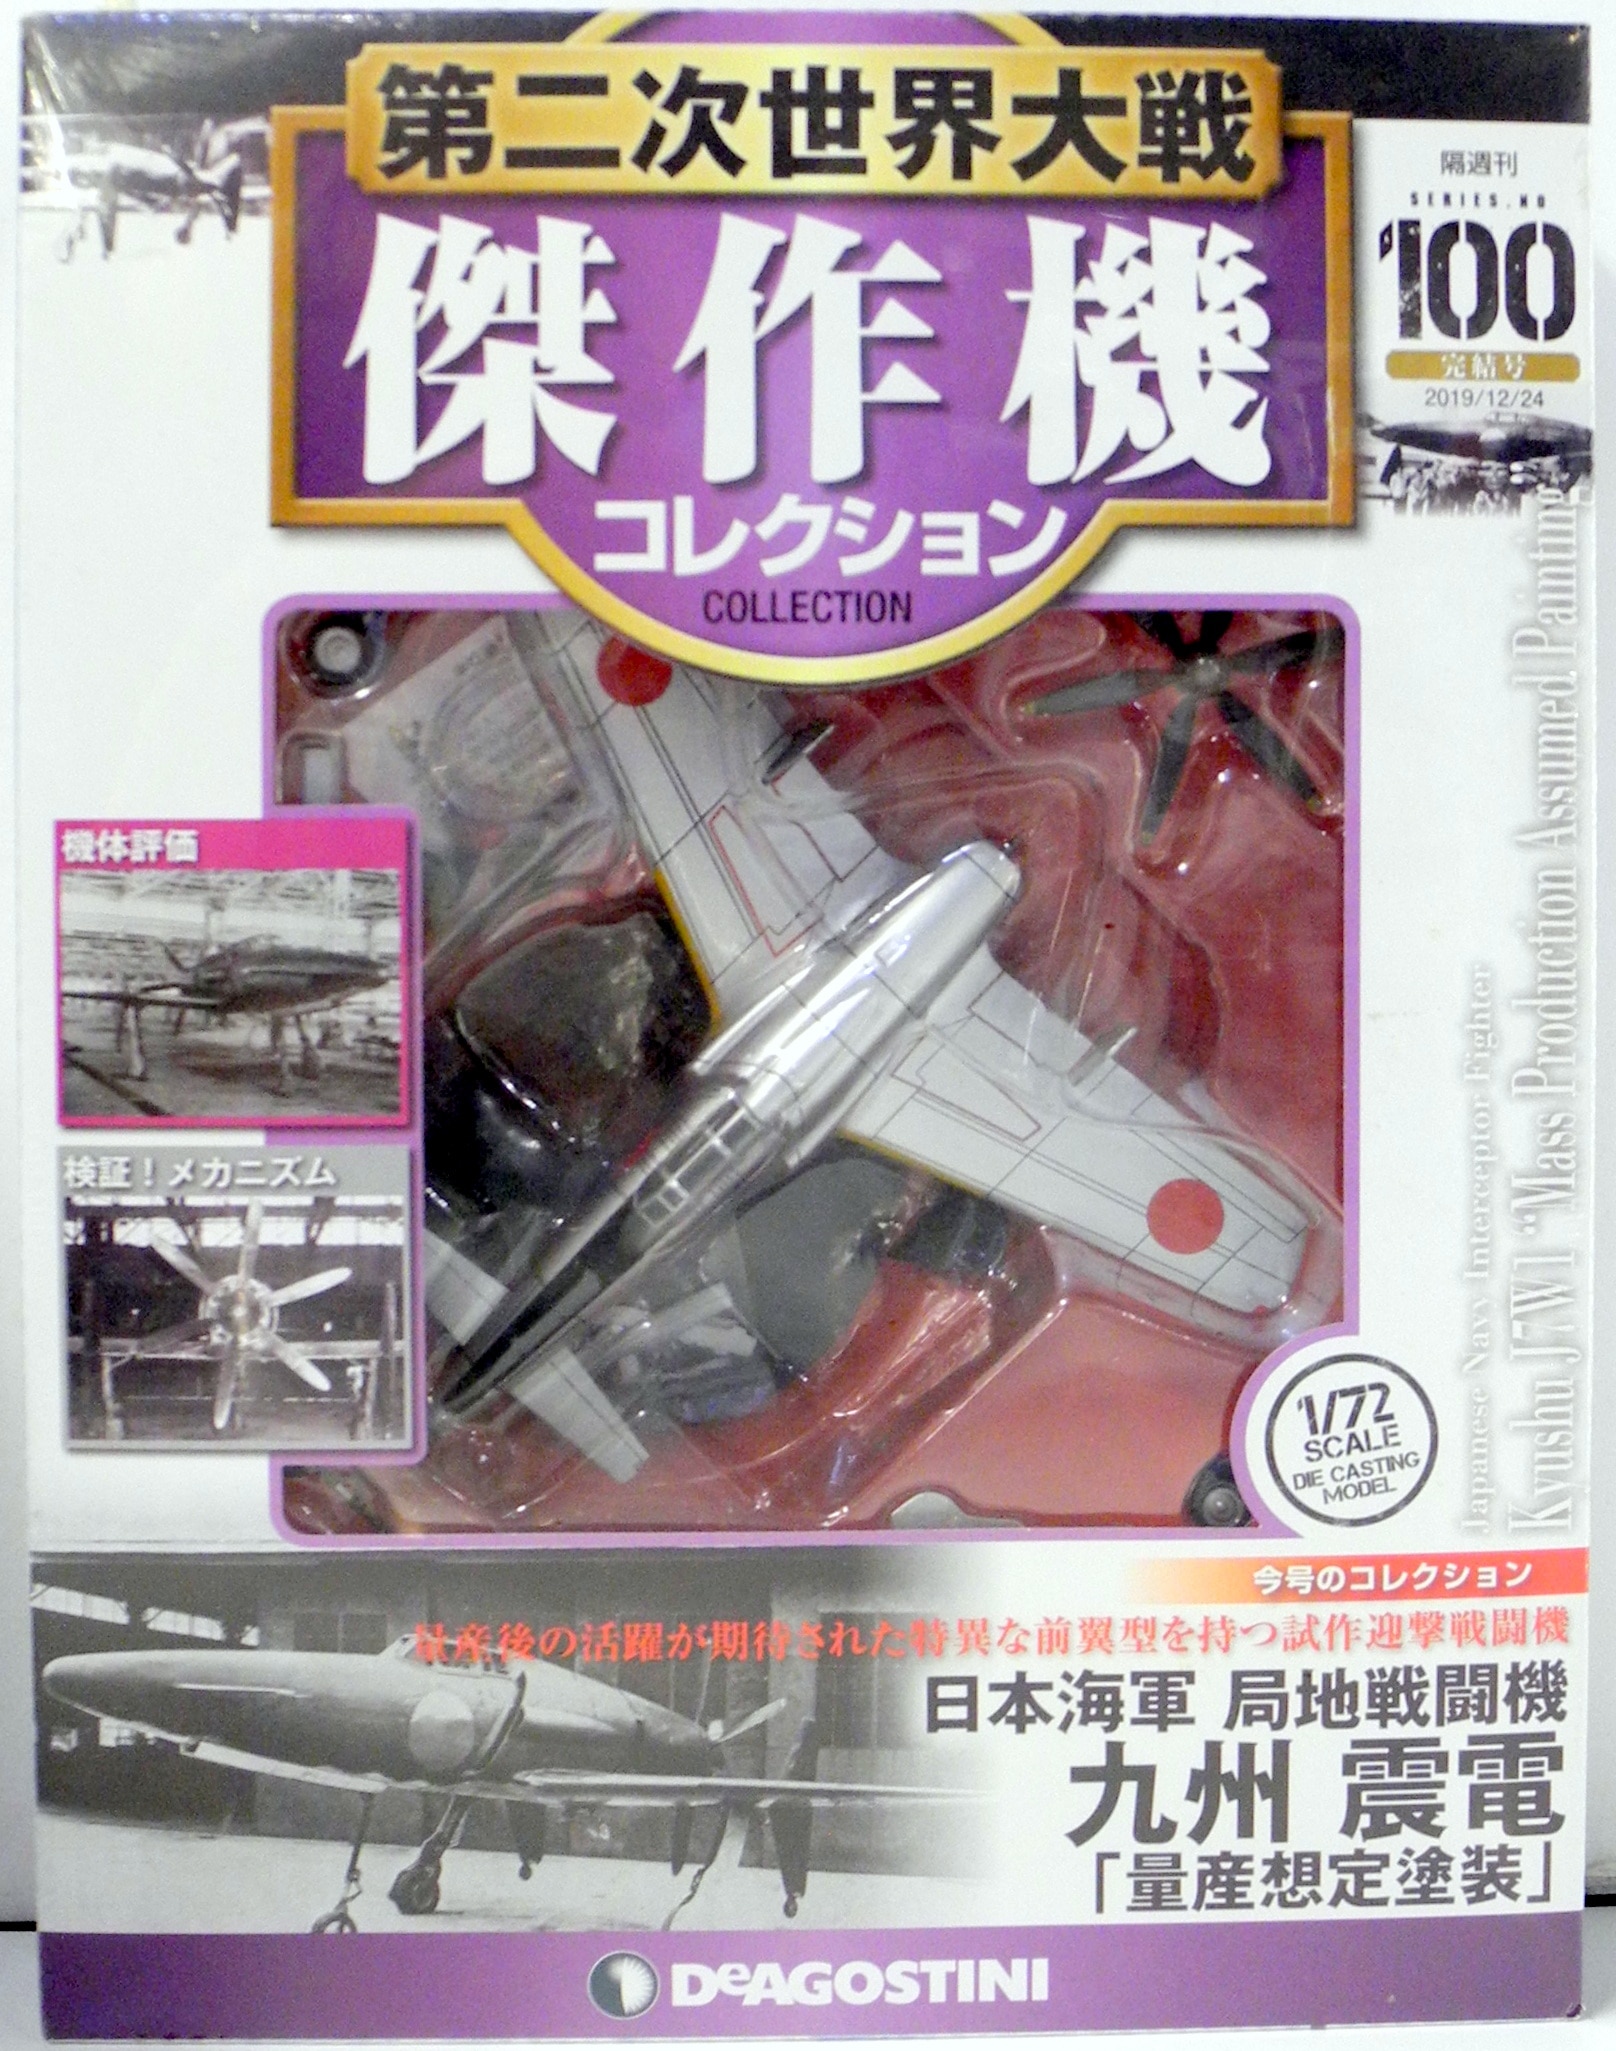 目玉商品 No.08 飛燕 川崎 第二次世界大戦 傑作機コレクション 